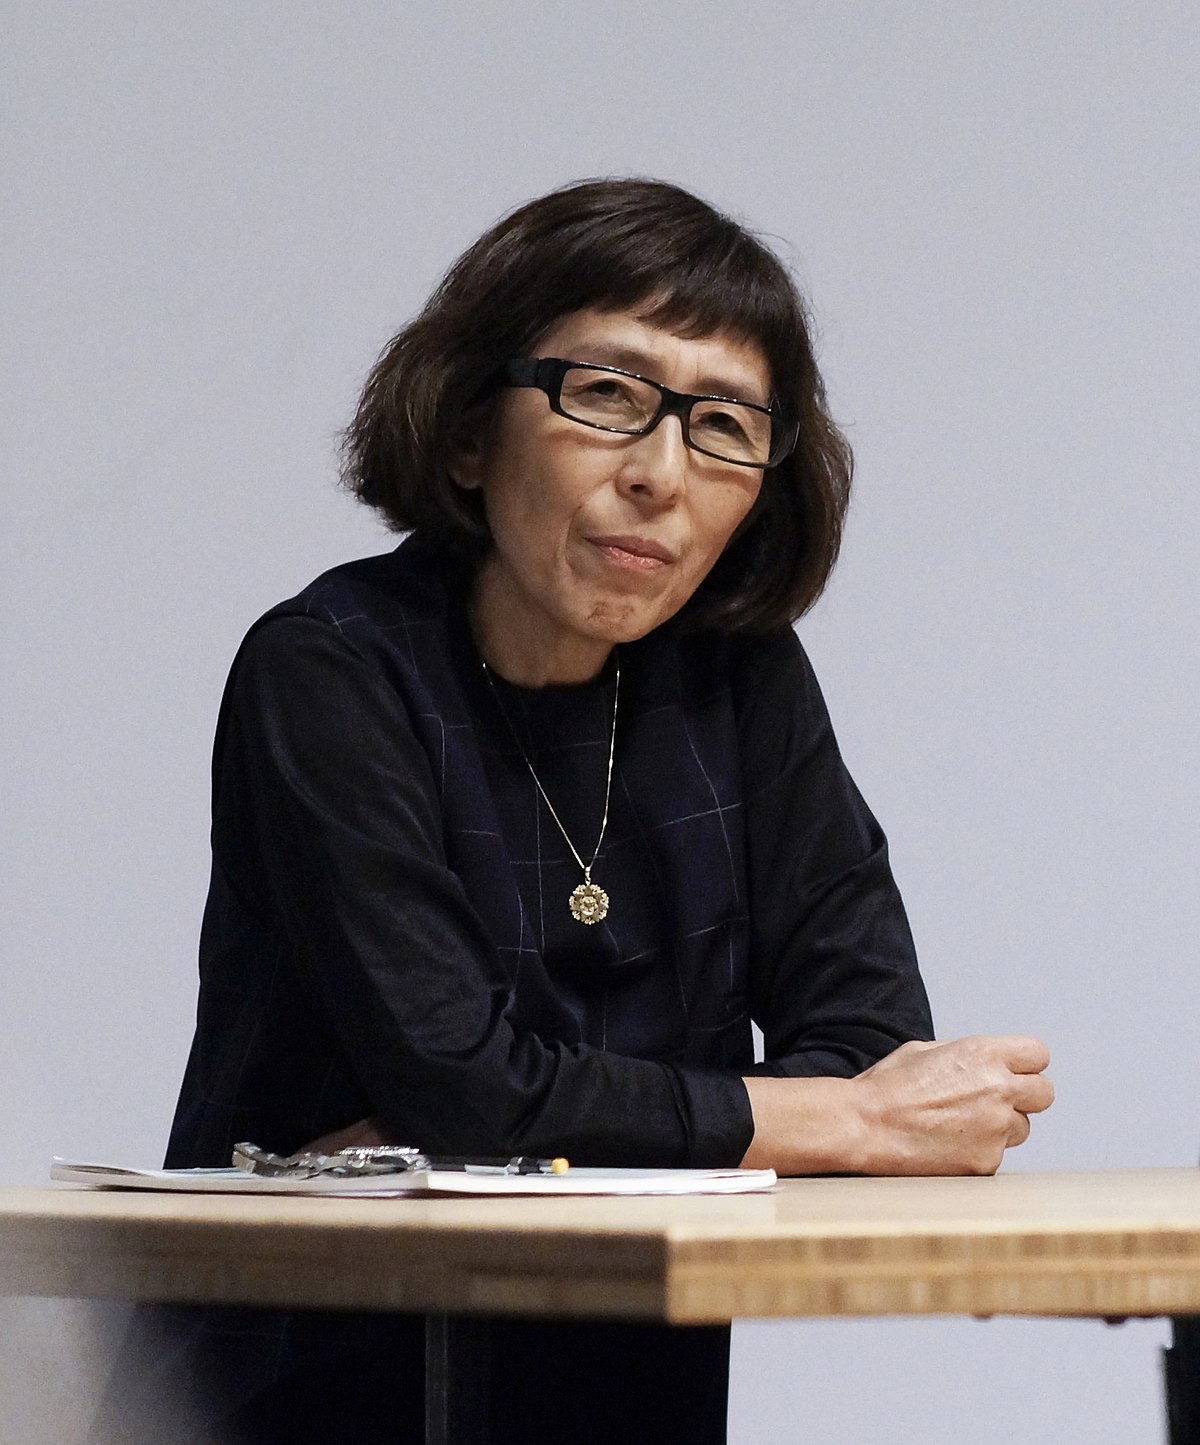 Кадзуё Сэдзима, Архитектура, Женщина архитектор